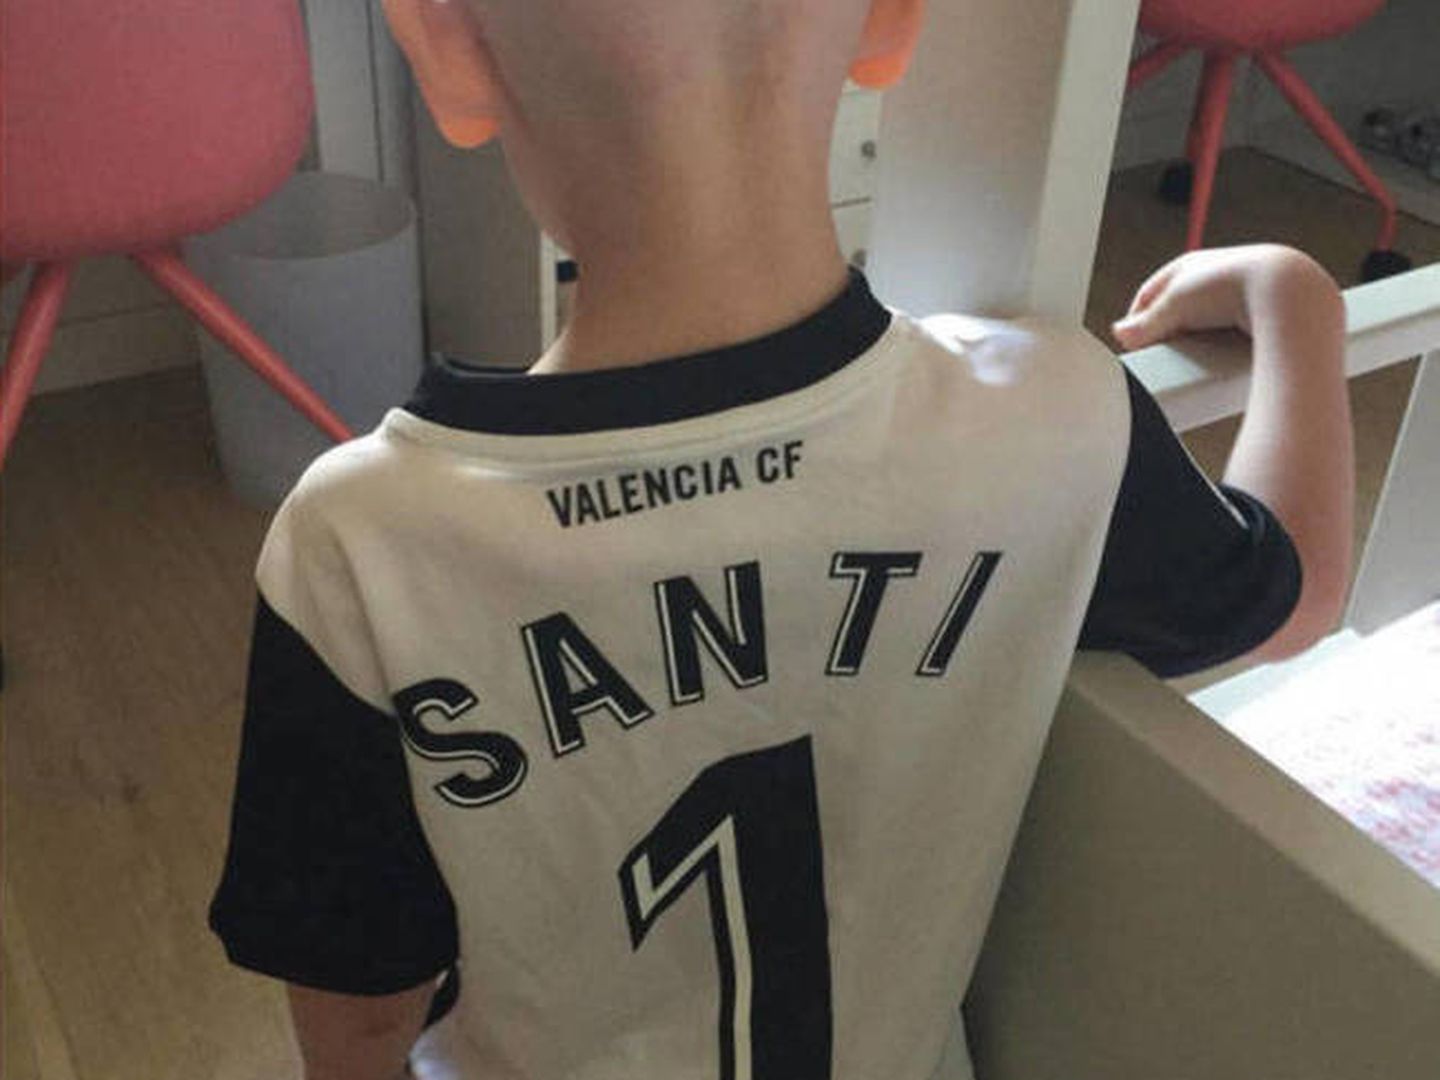 Imagen de Santi en las redes sociales de Cañizares. (Instagram)